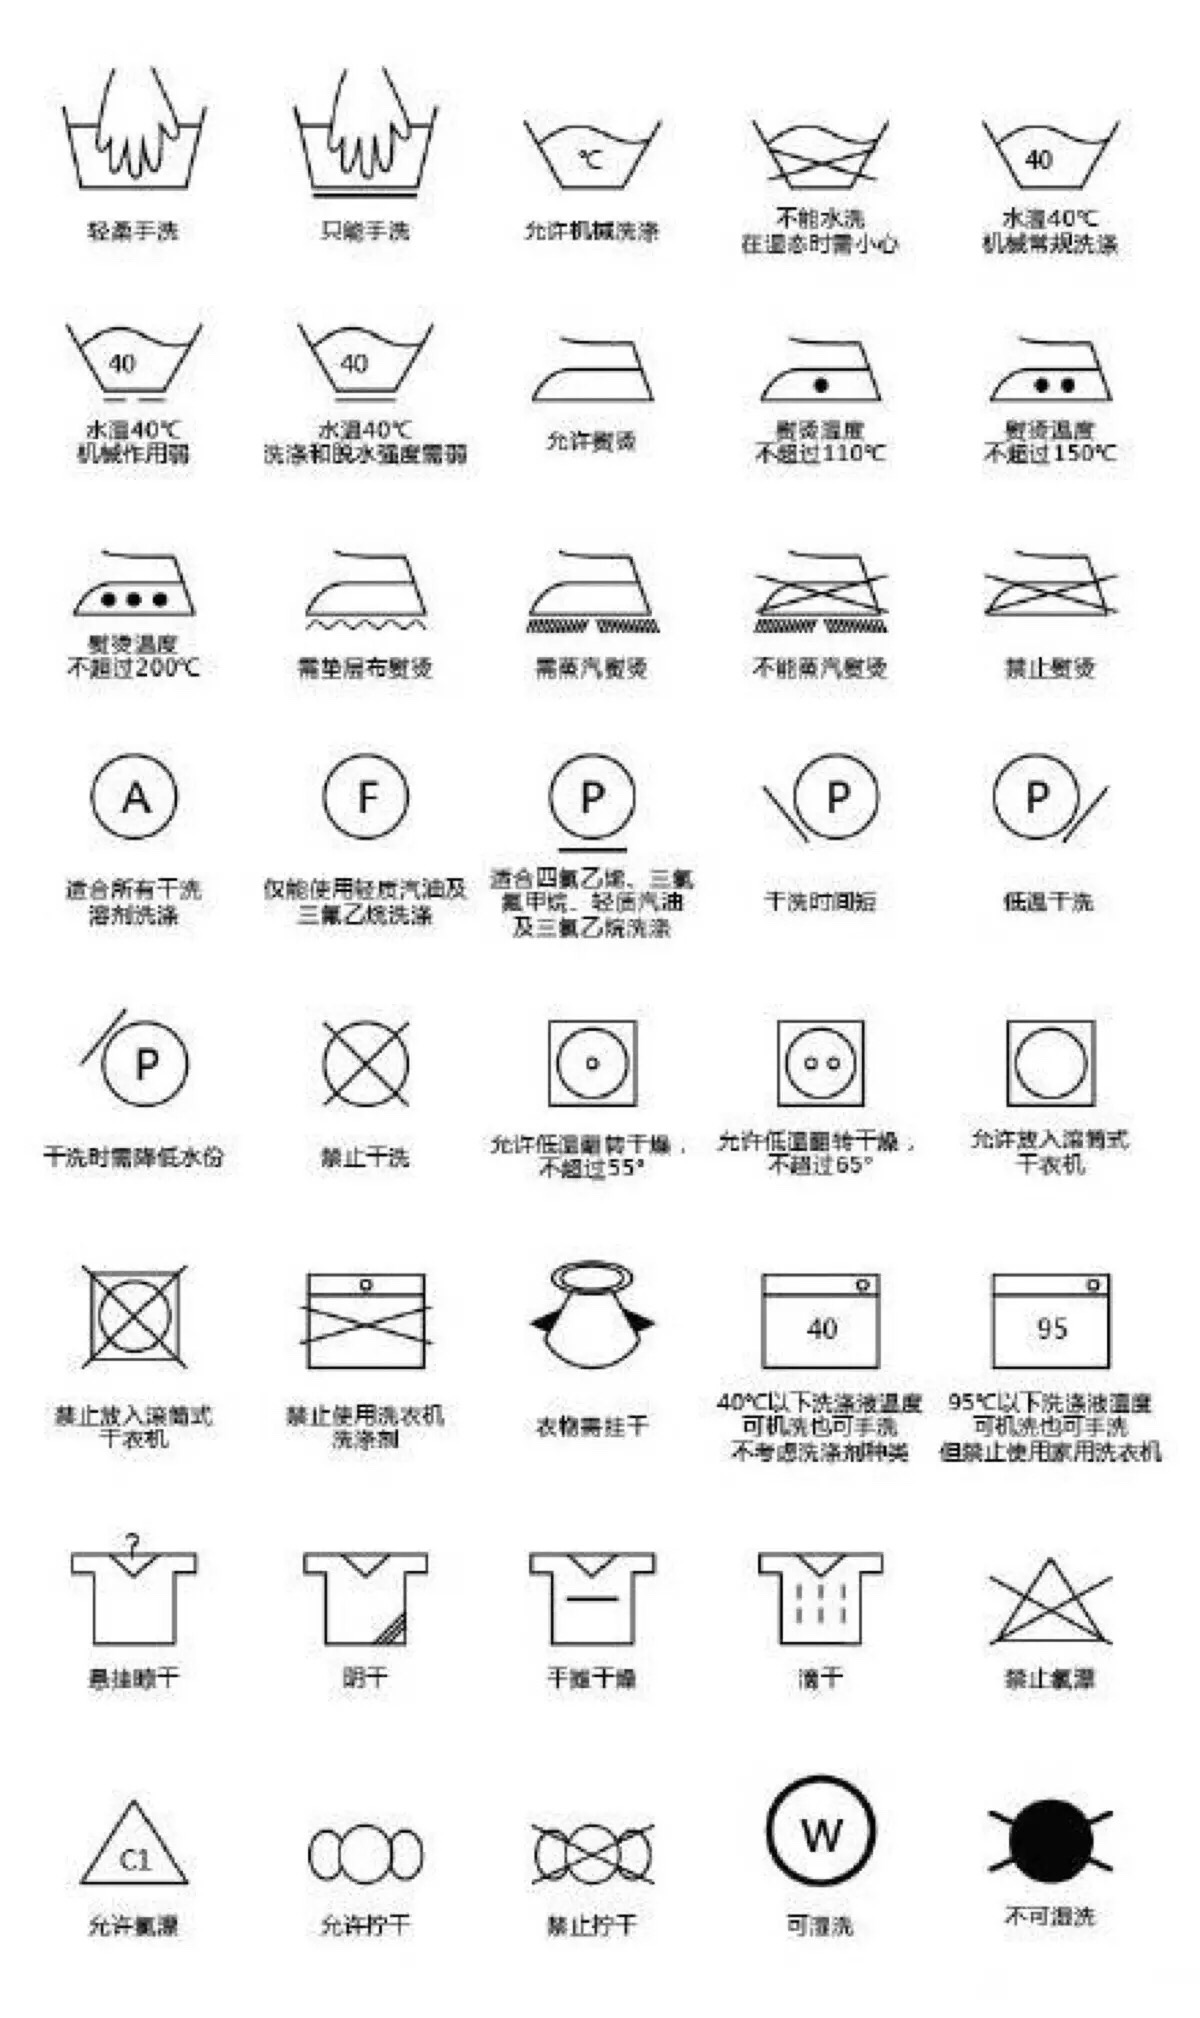 【衣物洗涤标志说明】对于没有中文翻译标签的,看懂了再也不会把刚买